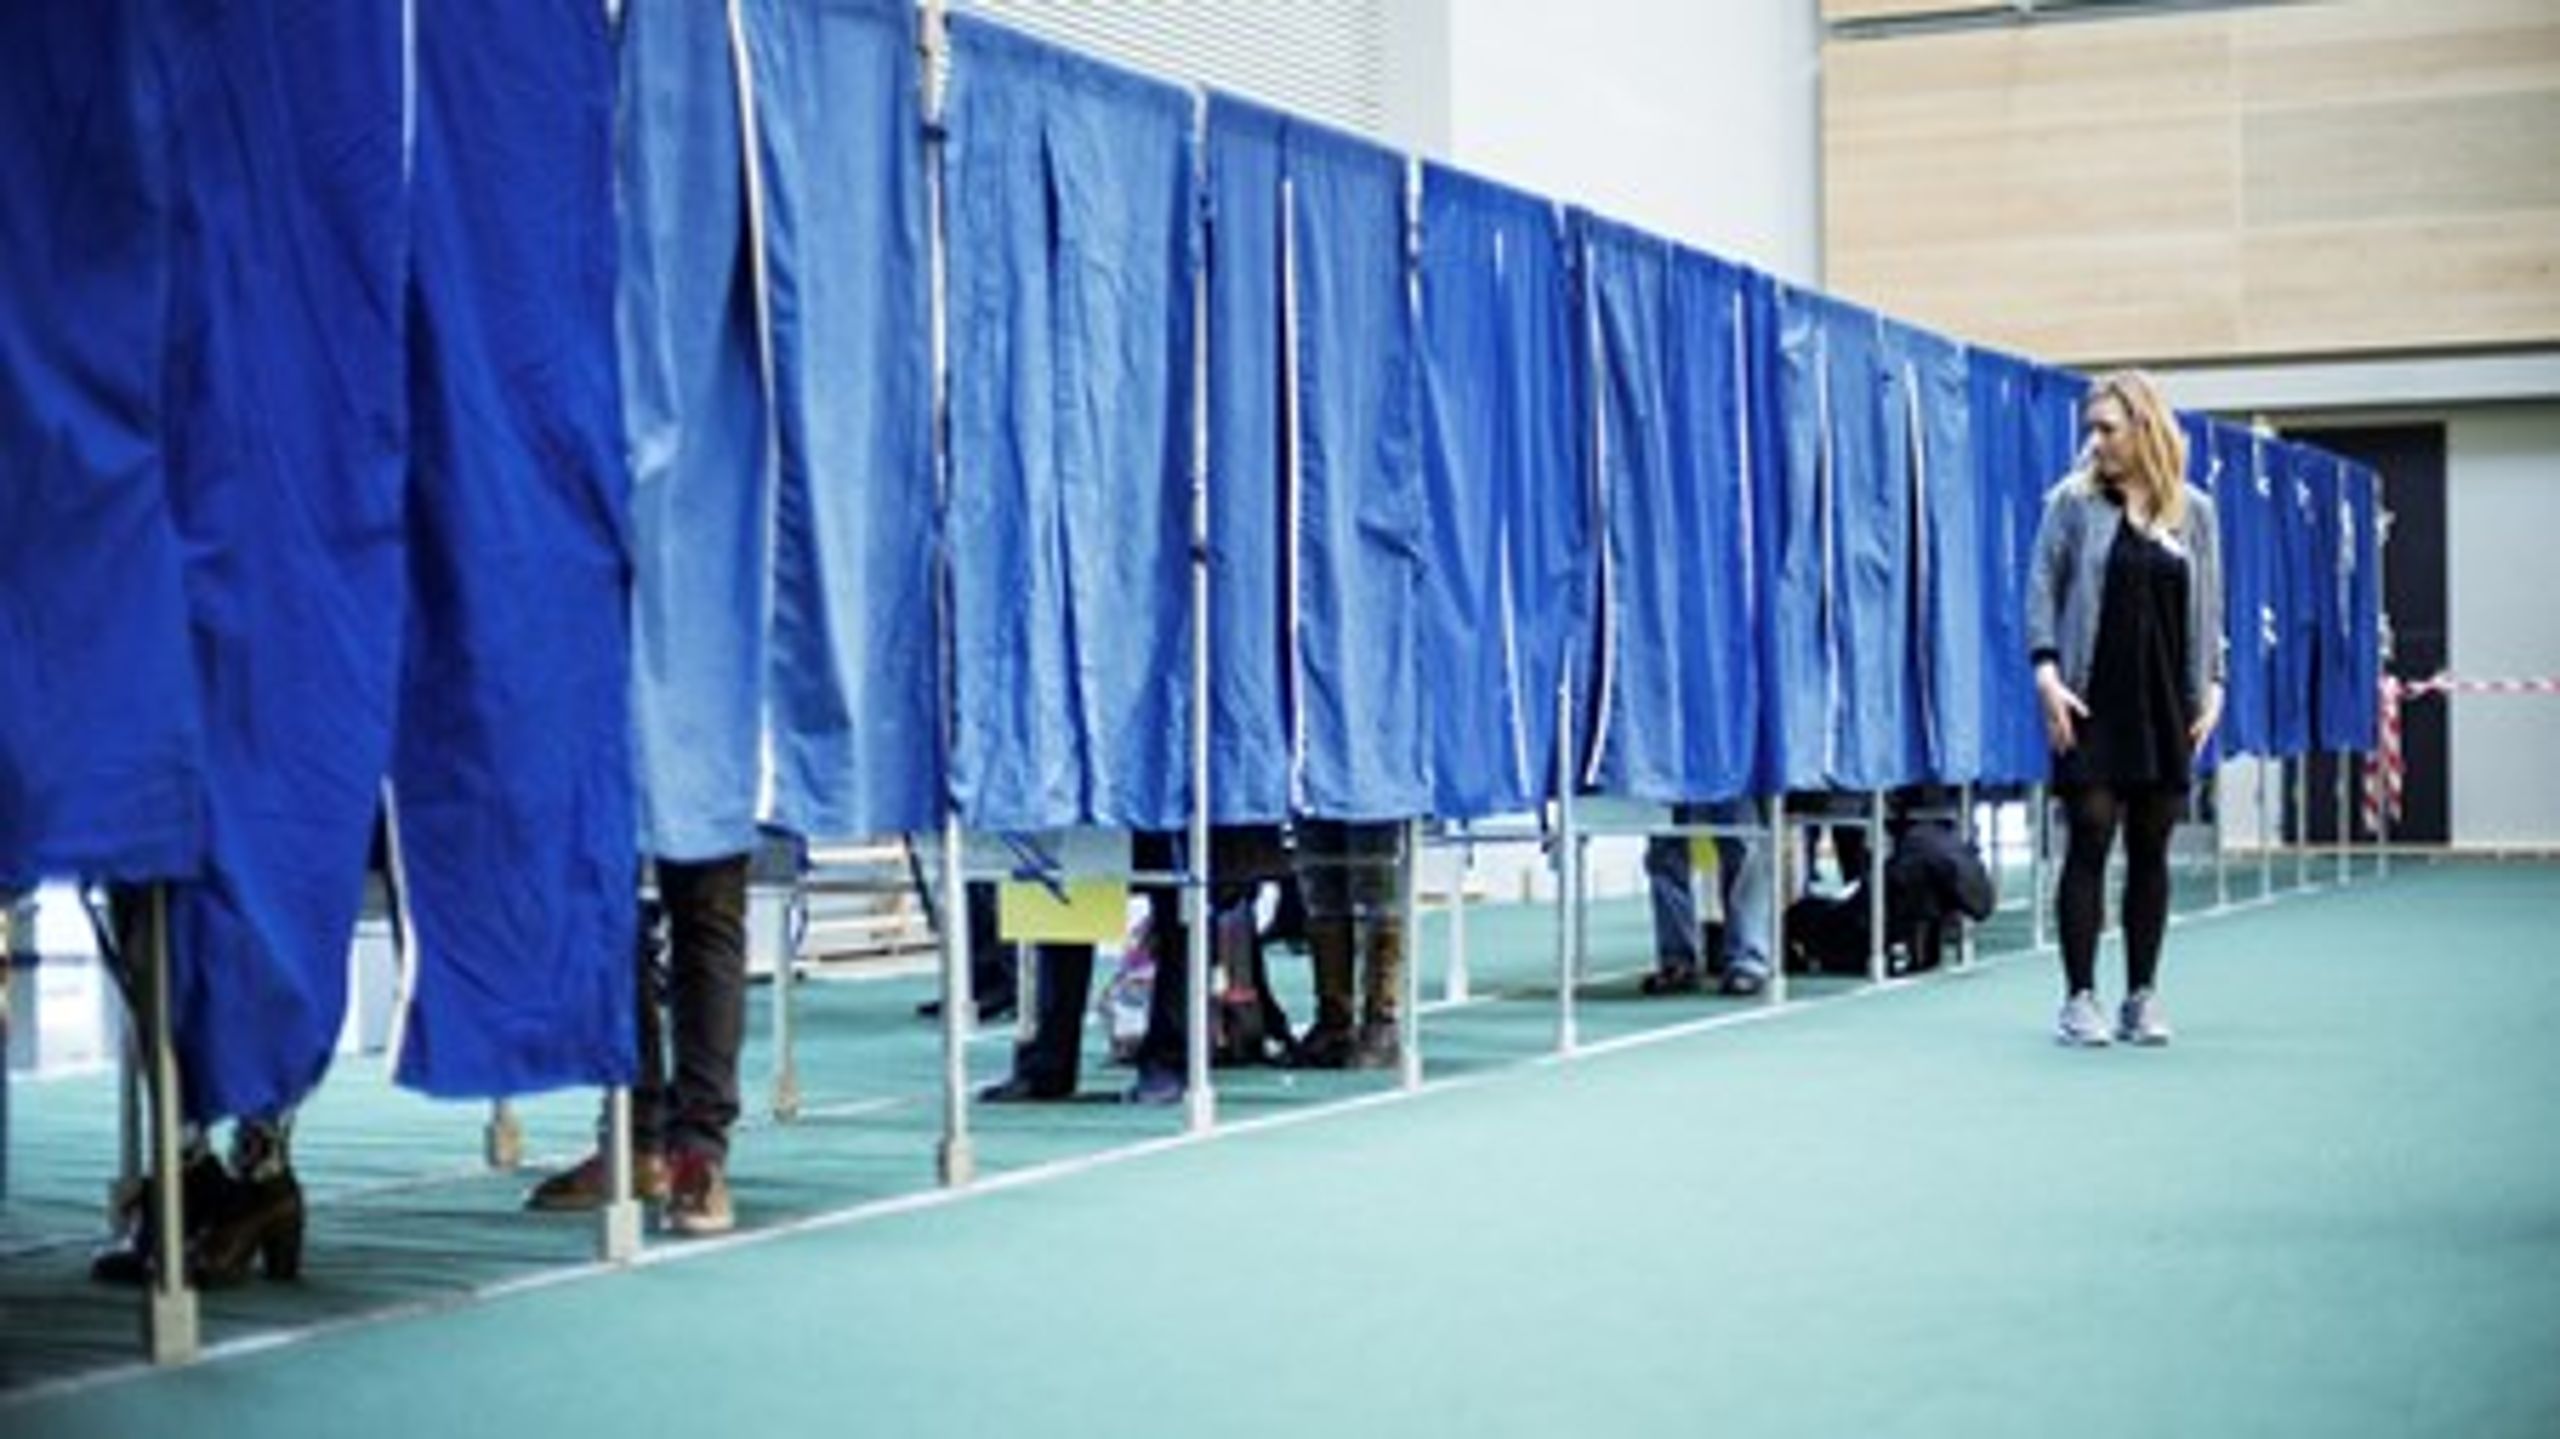 Der har været en stor bevægelse mellem partierne siden folketingsvalget i 2011, viser ny analyse over vælgervandringer.